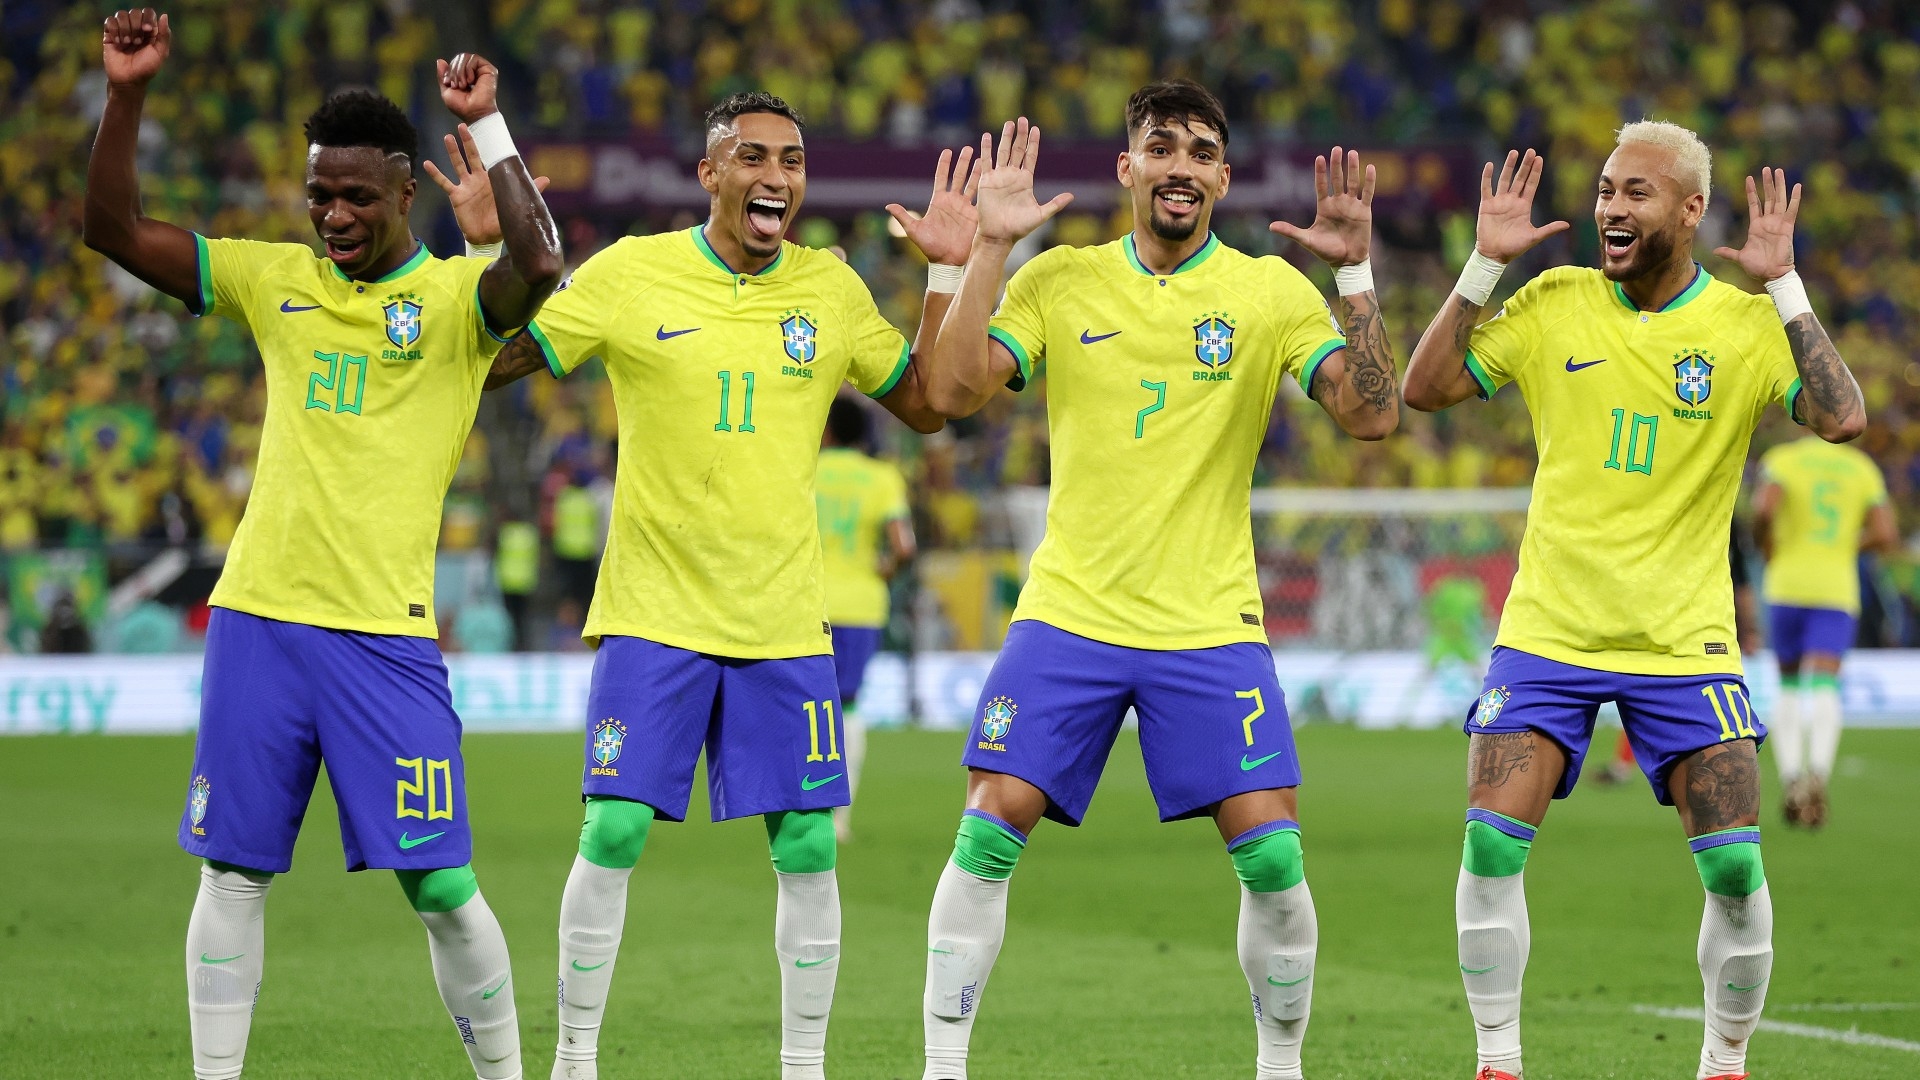 Danses des joueurs brésiliens après chaque but, Juninho éteint la polémique